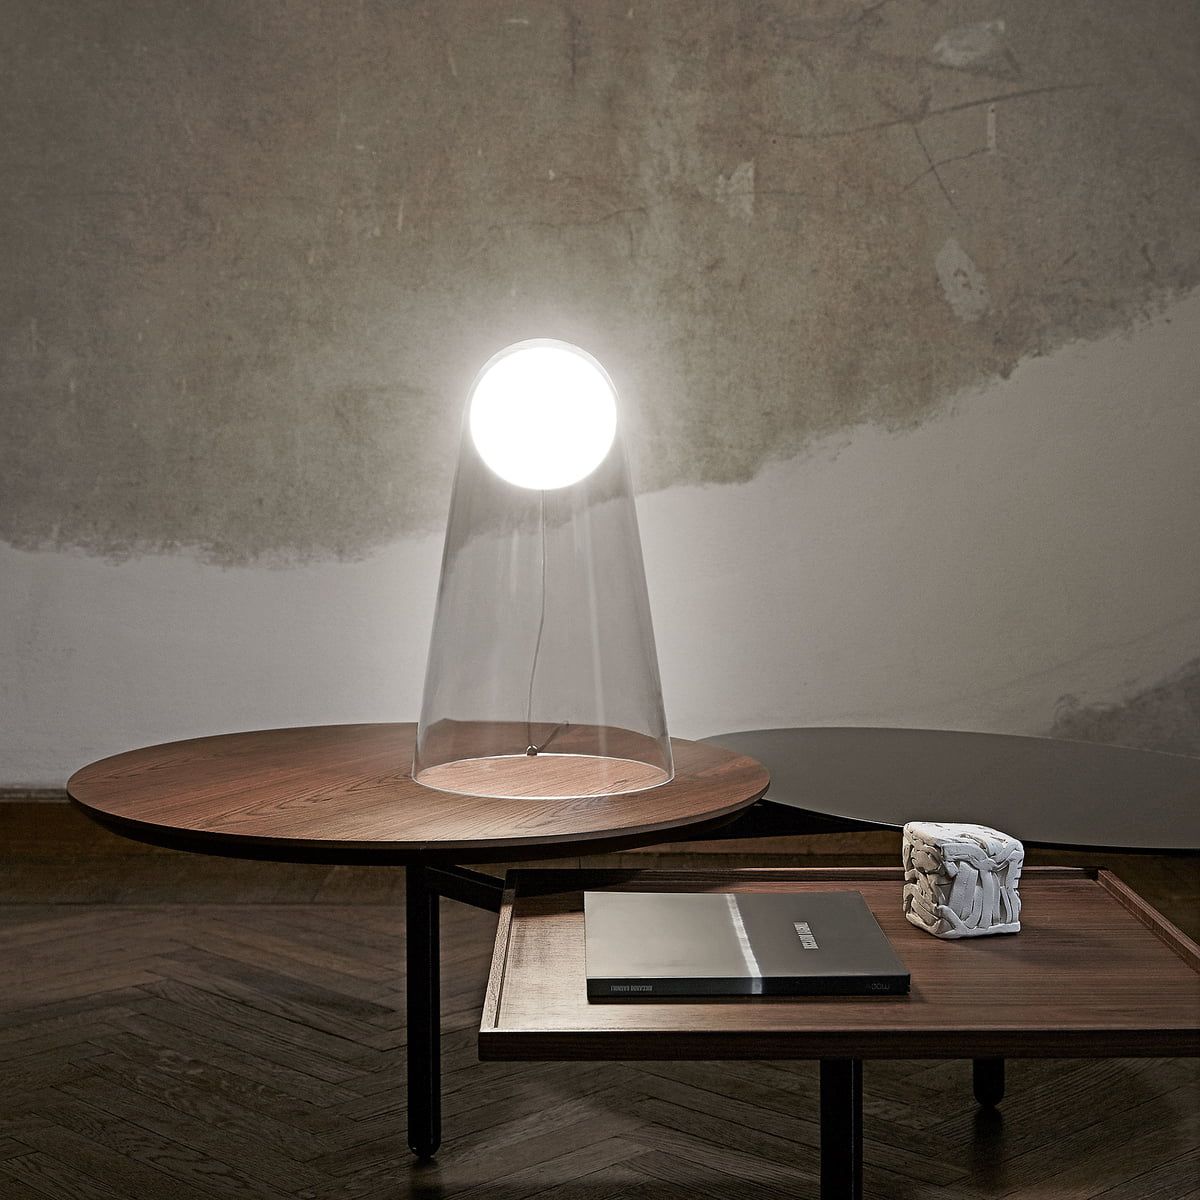 Lampe de table verre transparente flottante Satellight de marque Foscarini